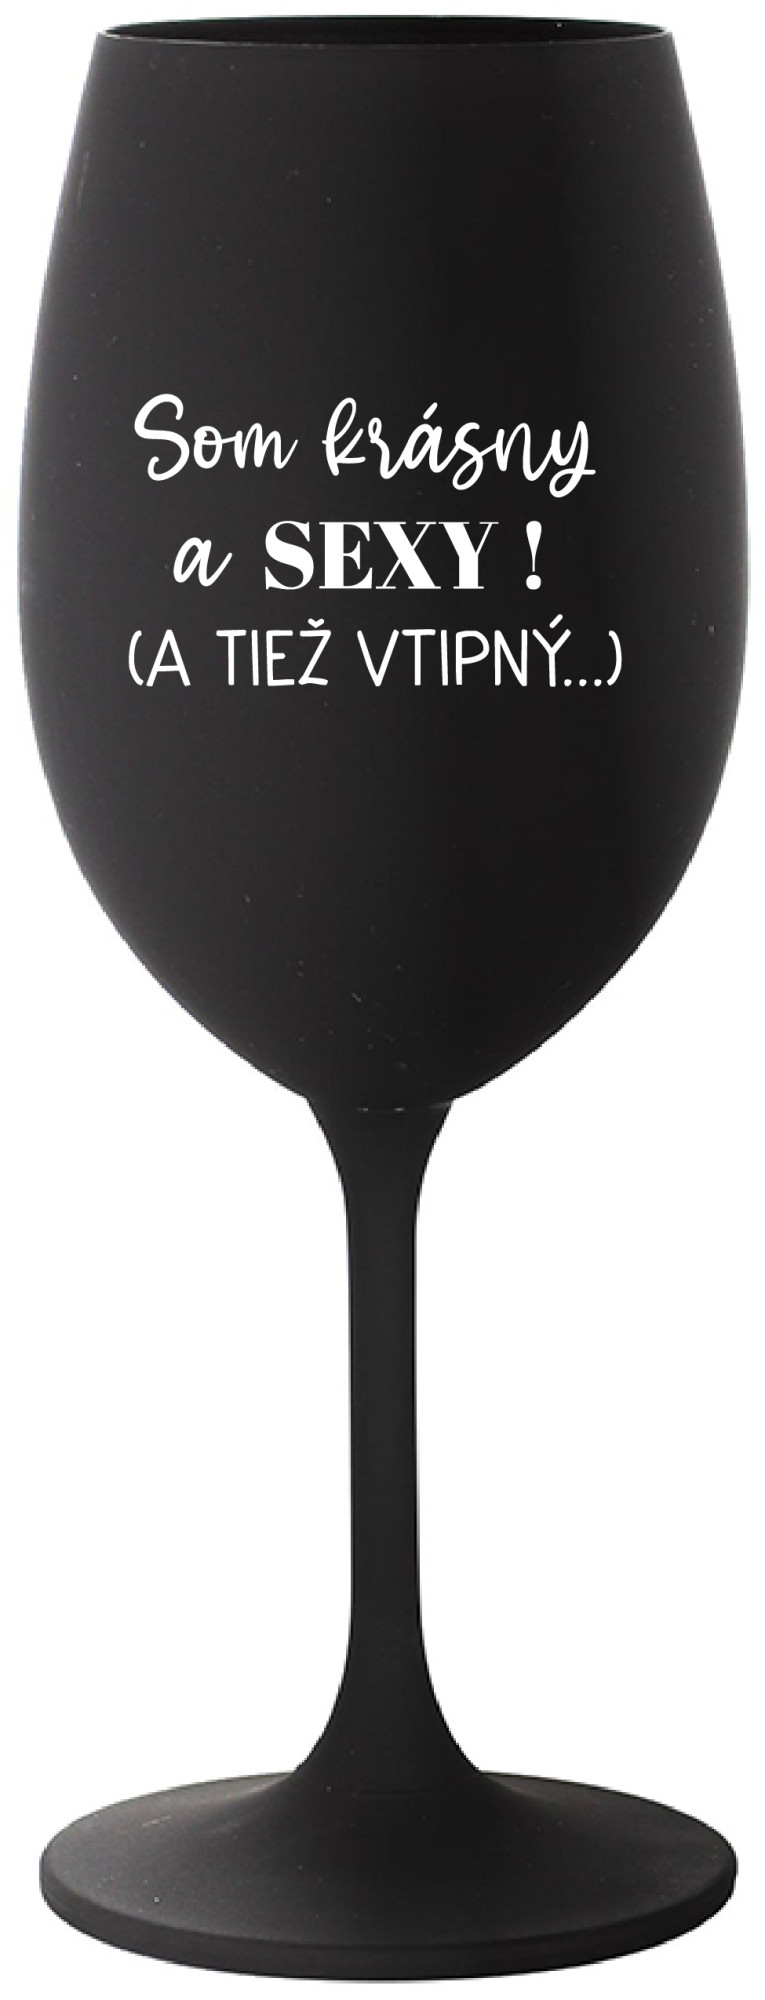 SOM KRÁSNY A SEXY! (A TIEŽ VTIPNÝ...) - černá sklenice na víno 350 ml